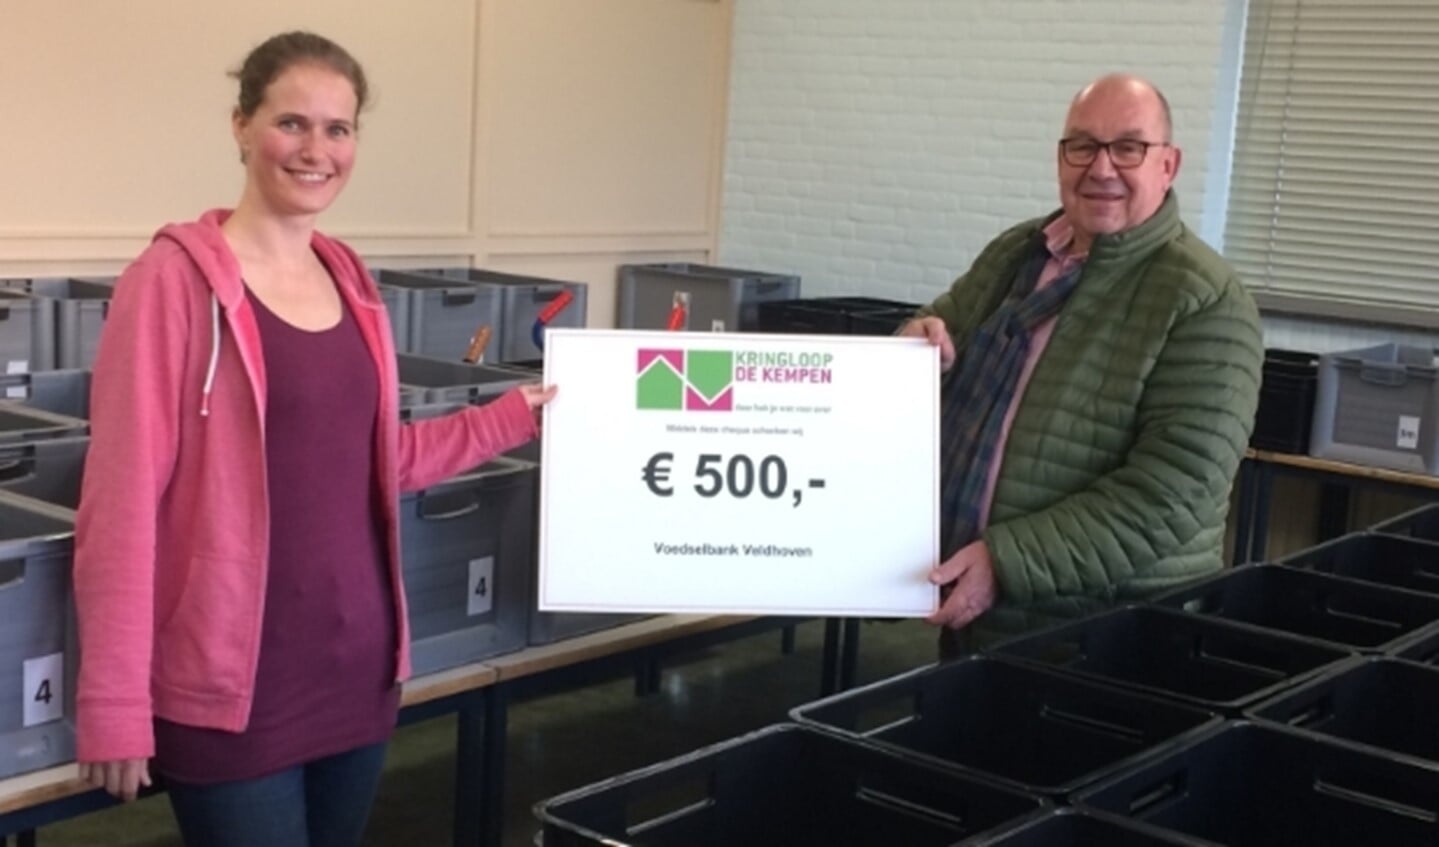 Dankzij goede giften zoals van Kringloop de Kempen kan de Voedselbank Veldhoven weer veel mensen helpen.